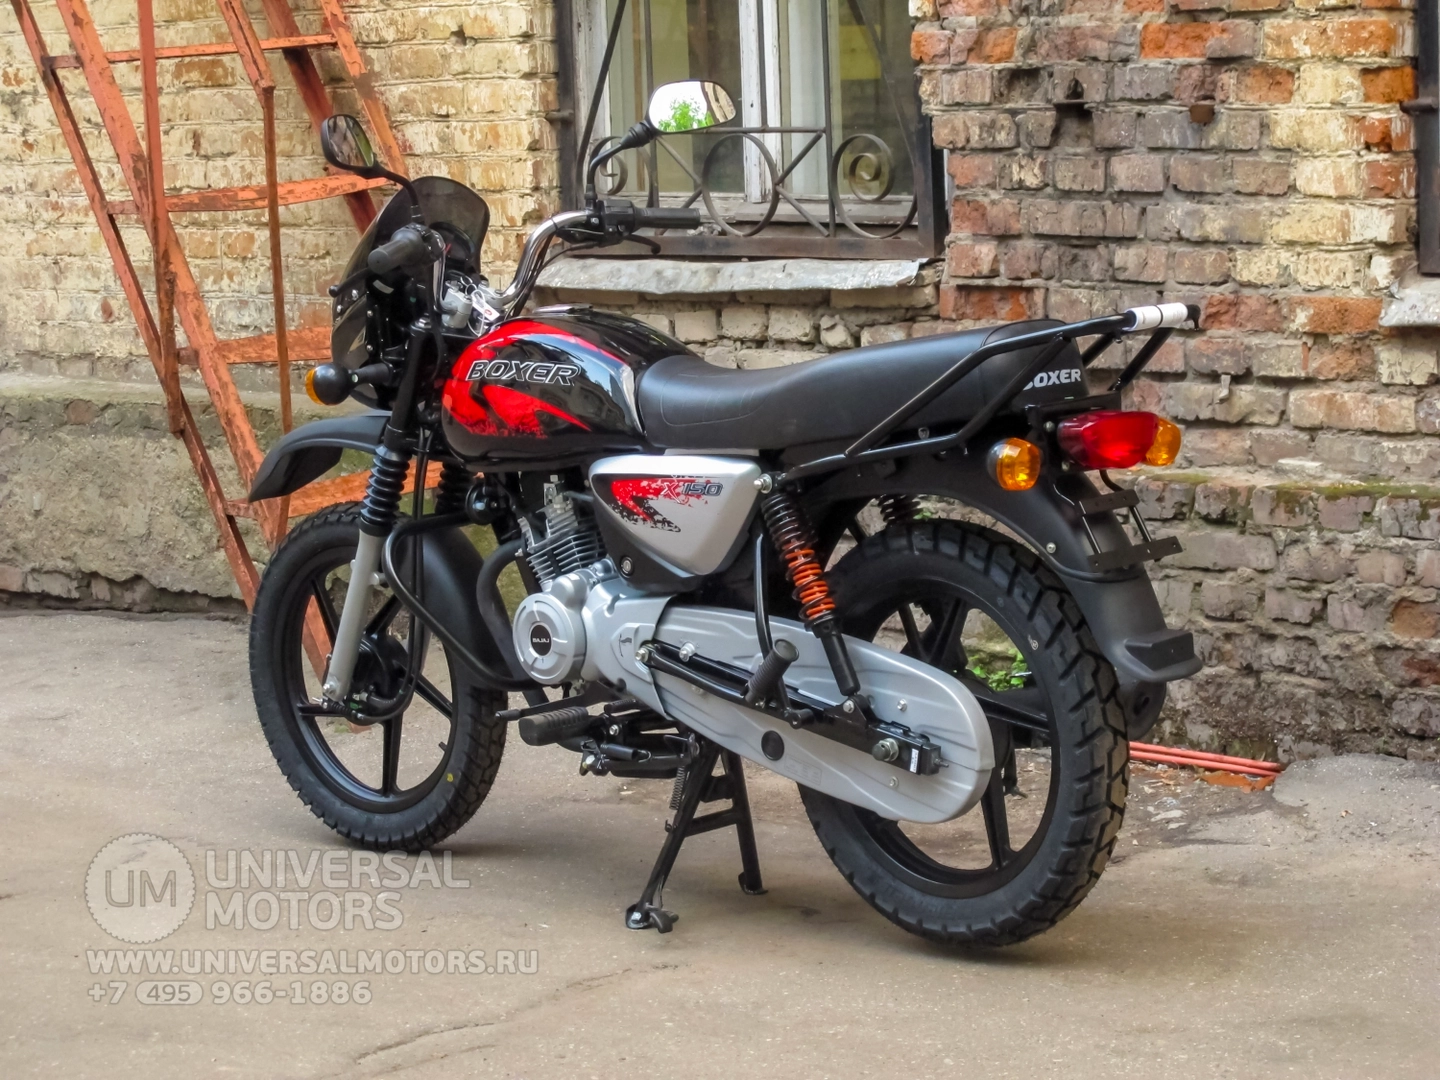 Мотоцикл Bajaj Boxer BM 150 X, 38249949322724466747